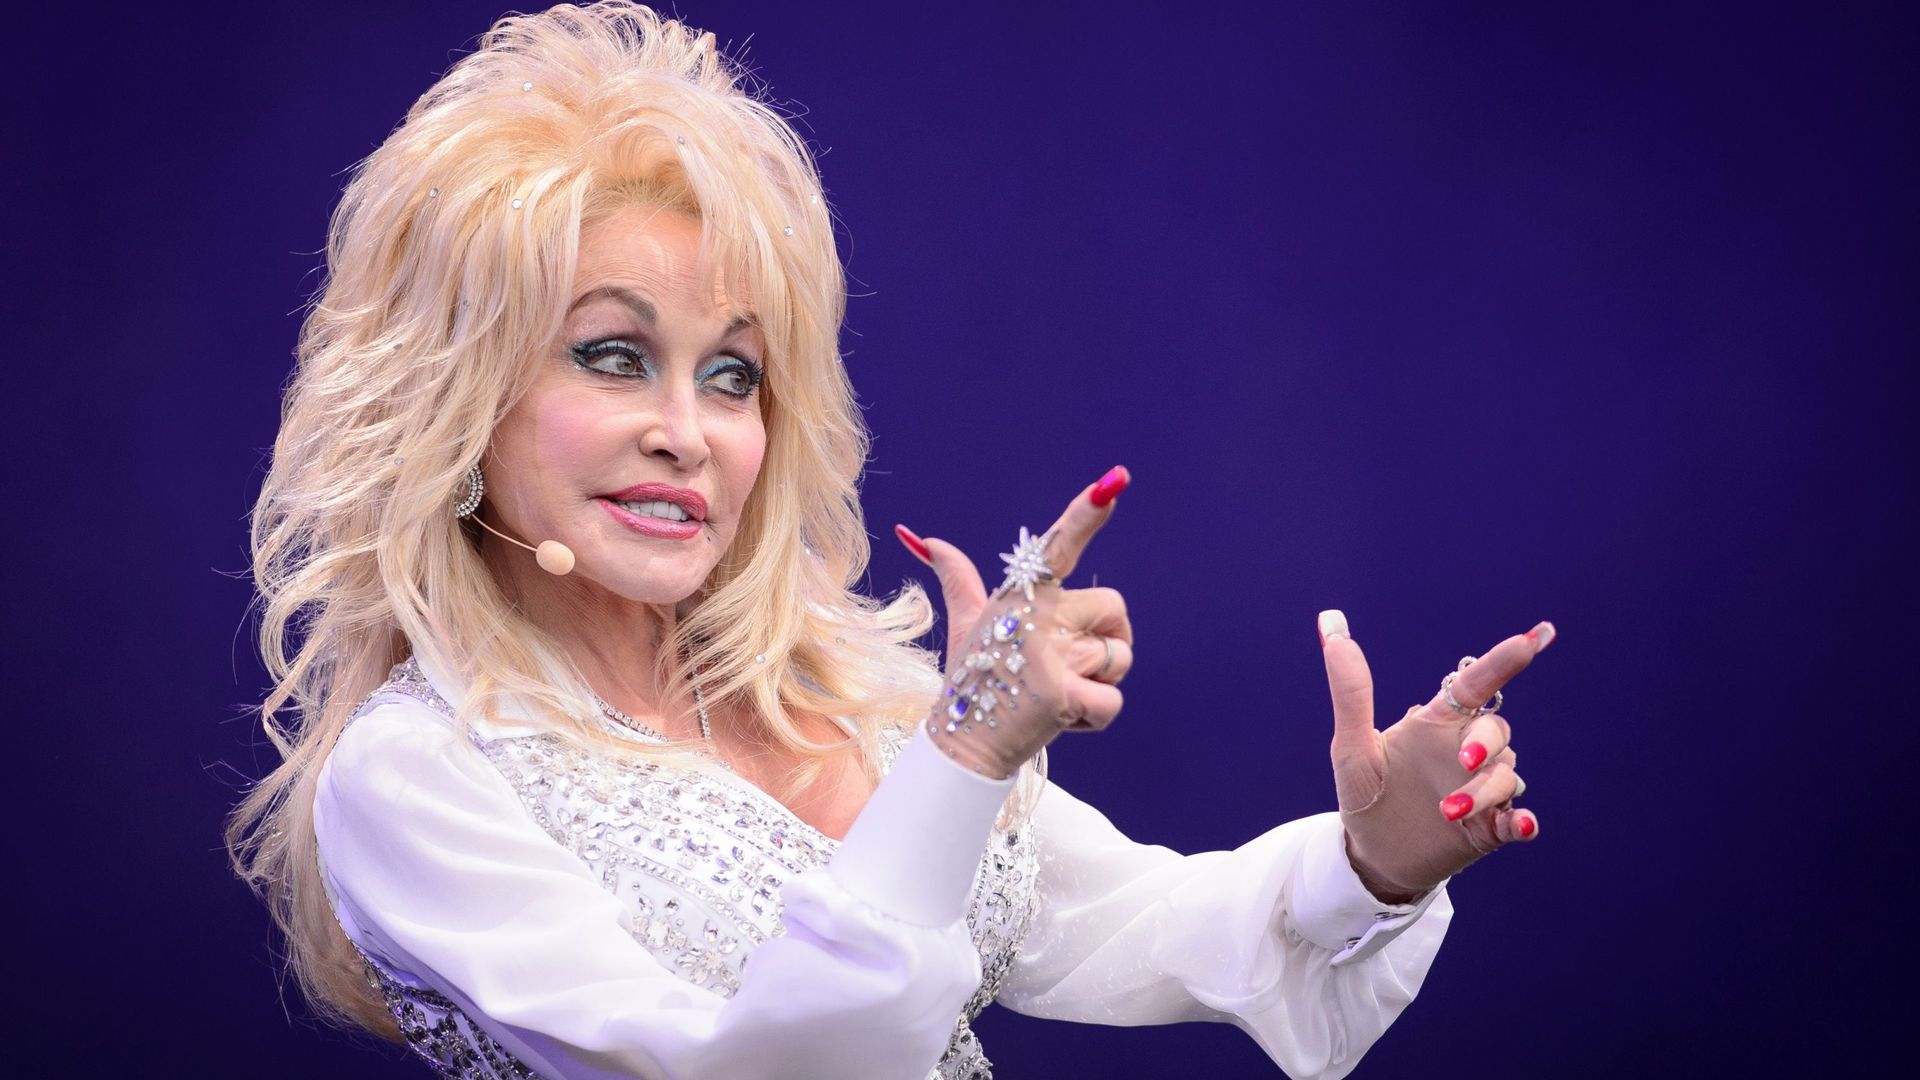 La chnateuse américaine Dolly Parton va avoir droit à sa série sur Netflix.